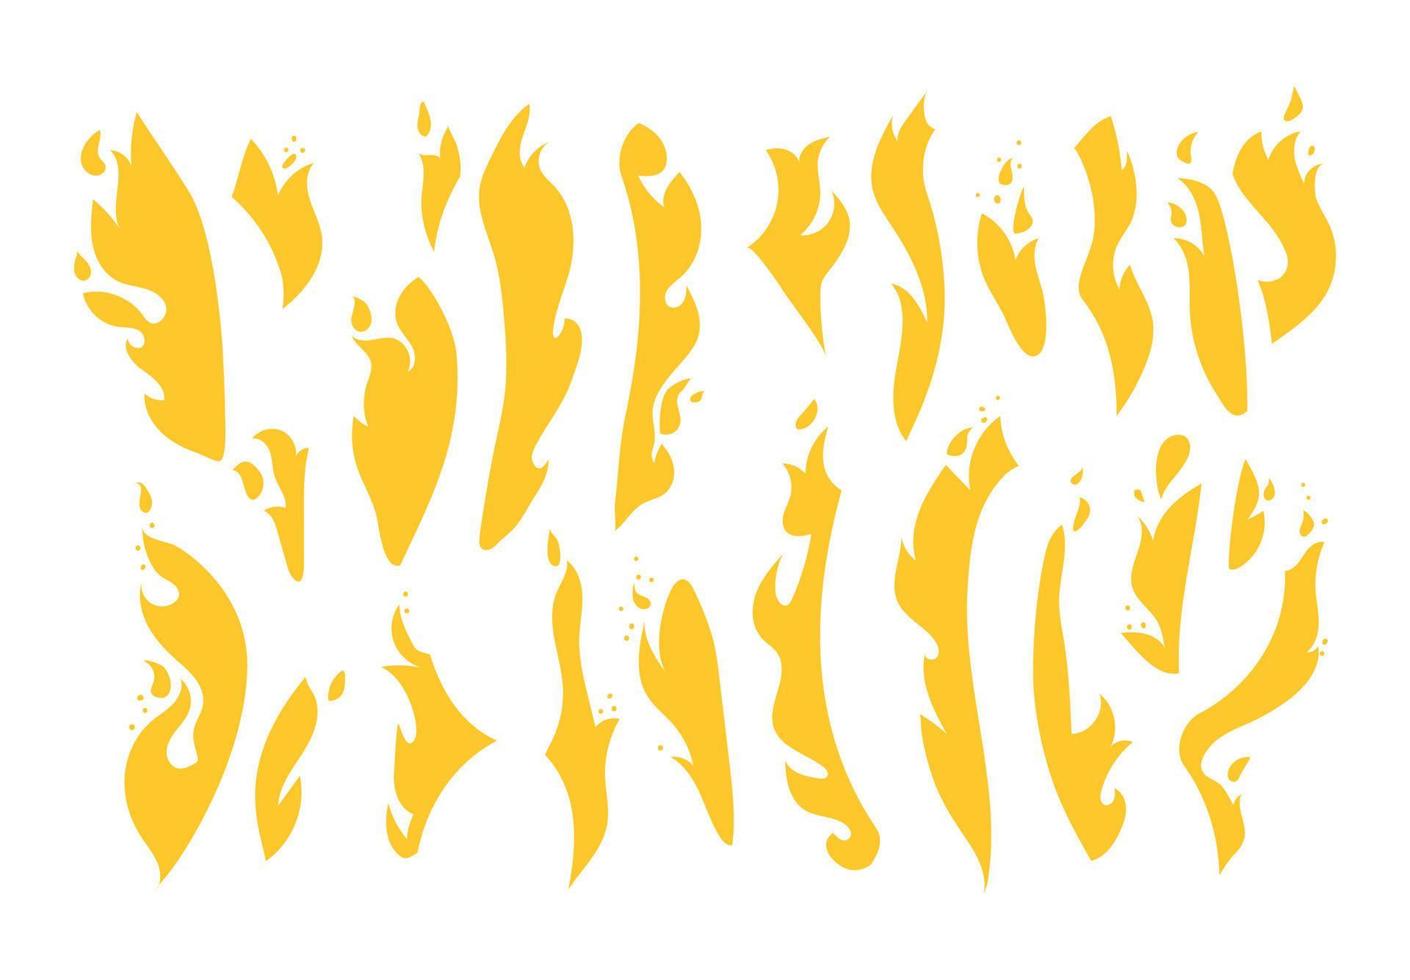 una grande serie di fiamme gialle. raccolta di varie forme di fuoco. sagome disegnate a mano di un falò ardente. illustrazione vettoriale isolato su sfondo bianco.